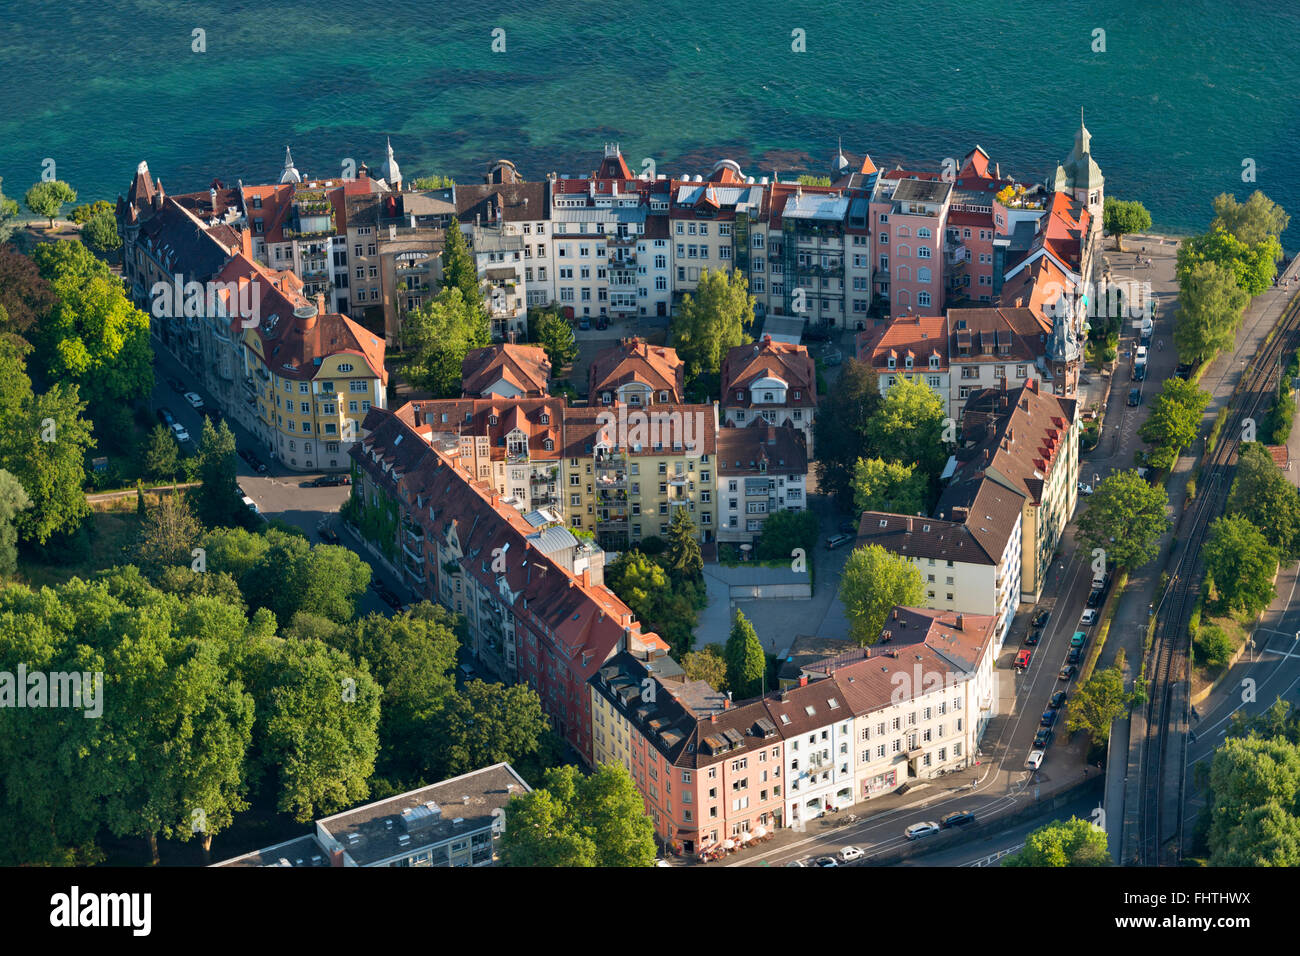 In Germania, il lago di Costanza, vista aerea, Konstanz Foto Stock